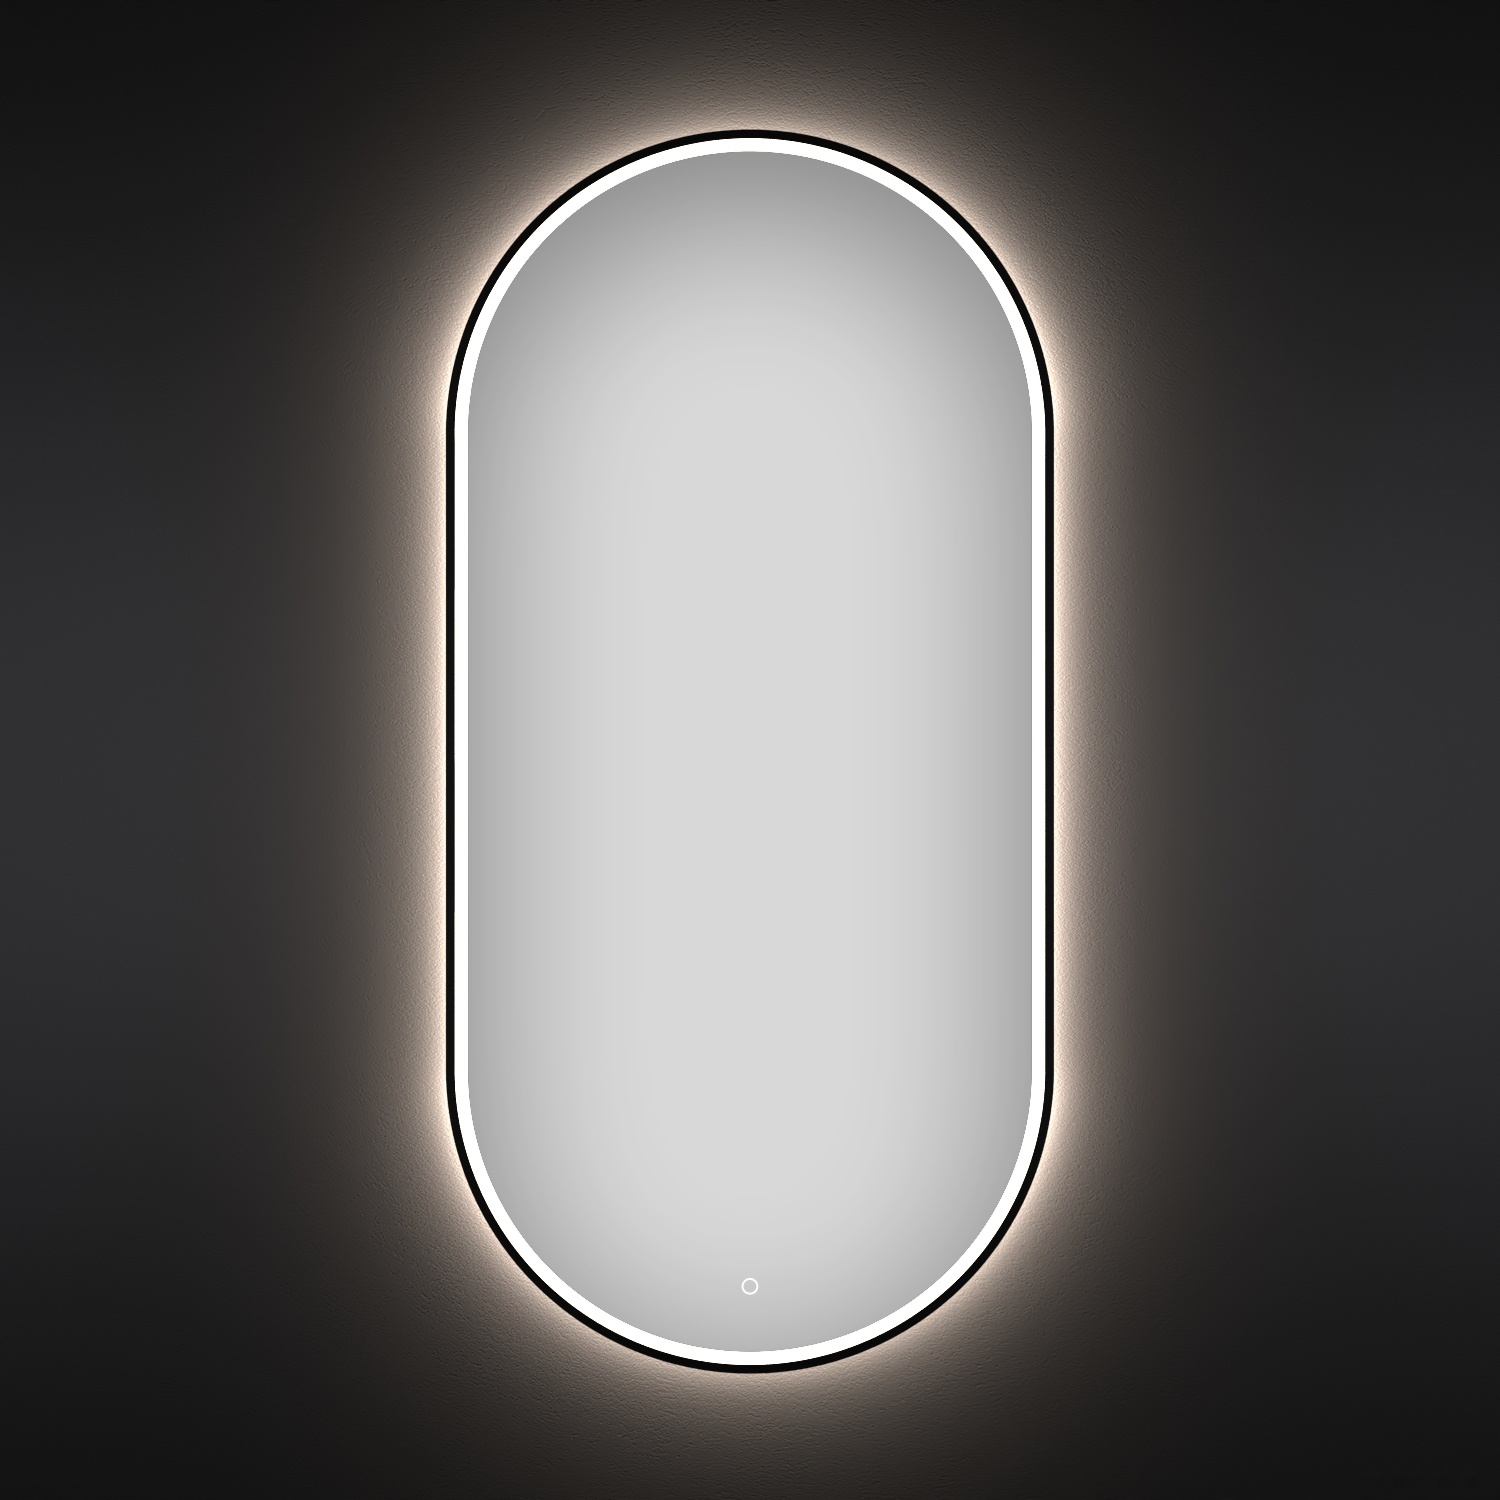 зеркало wellsee зеркало с фронтальной led-подсветкой 7 rays' spectrum 172202050, 60 x 120 см (с сенсором и регулировкой яркости освещения)